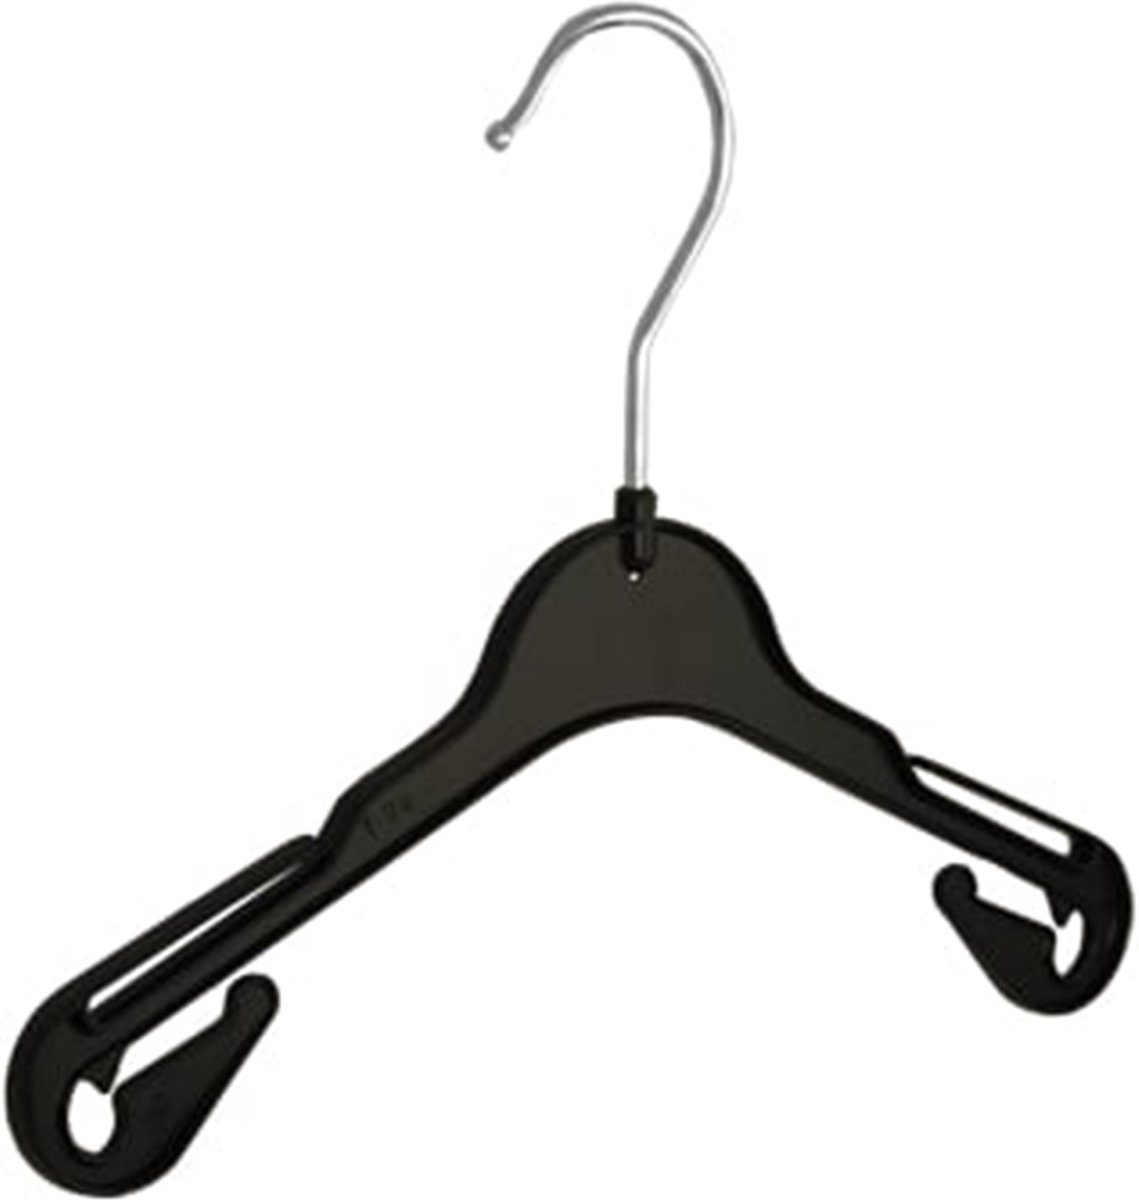 De Kledinghanger Gigant - 20 x Blousehanger / shirthanger / babyhanger / kinderhanger (T26) kunststof zwart met rokinkepingen, 26 cm